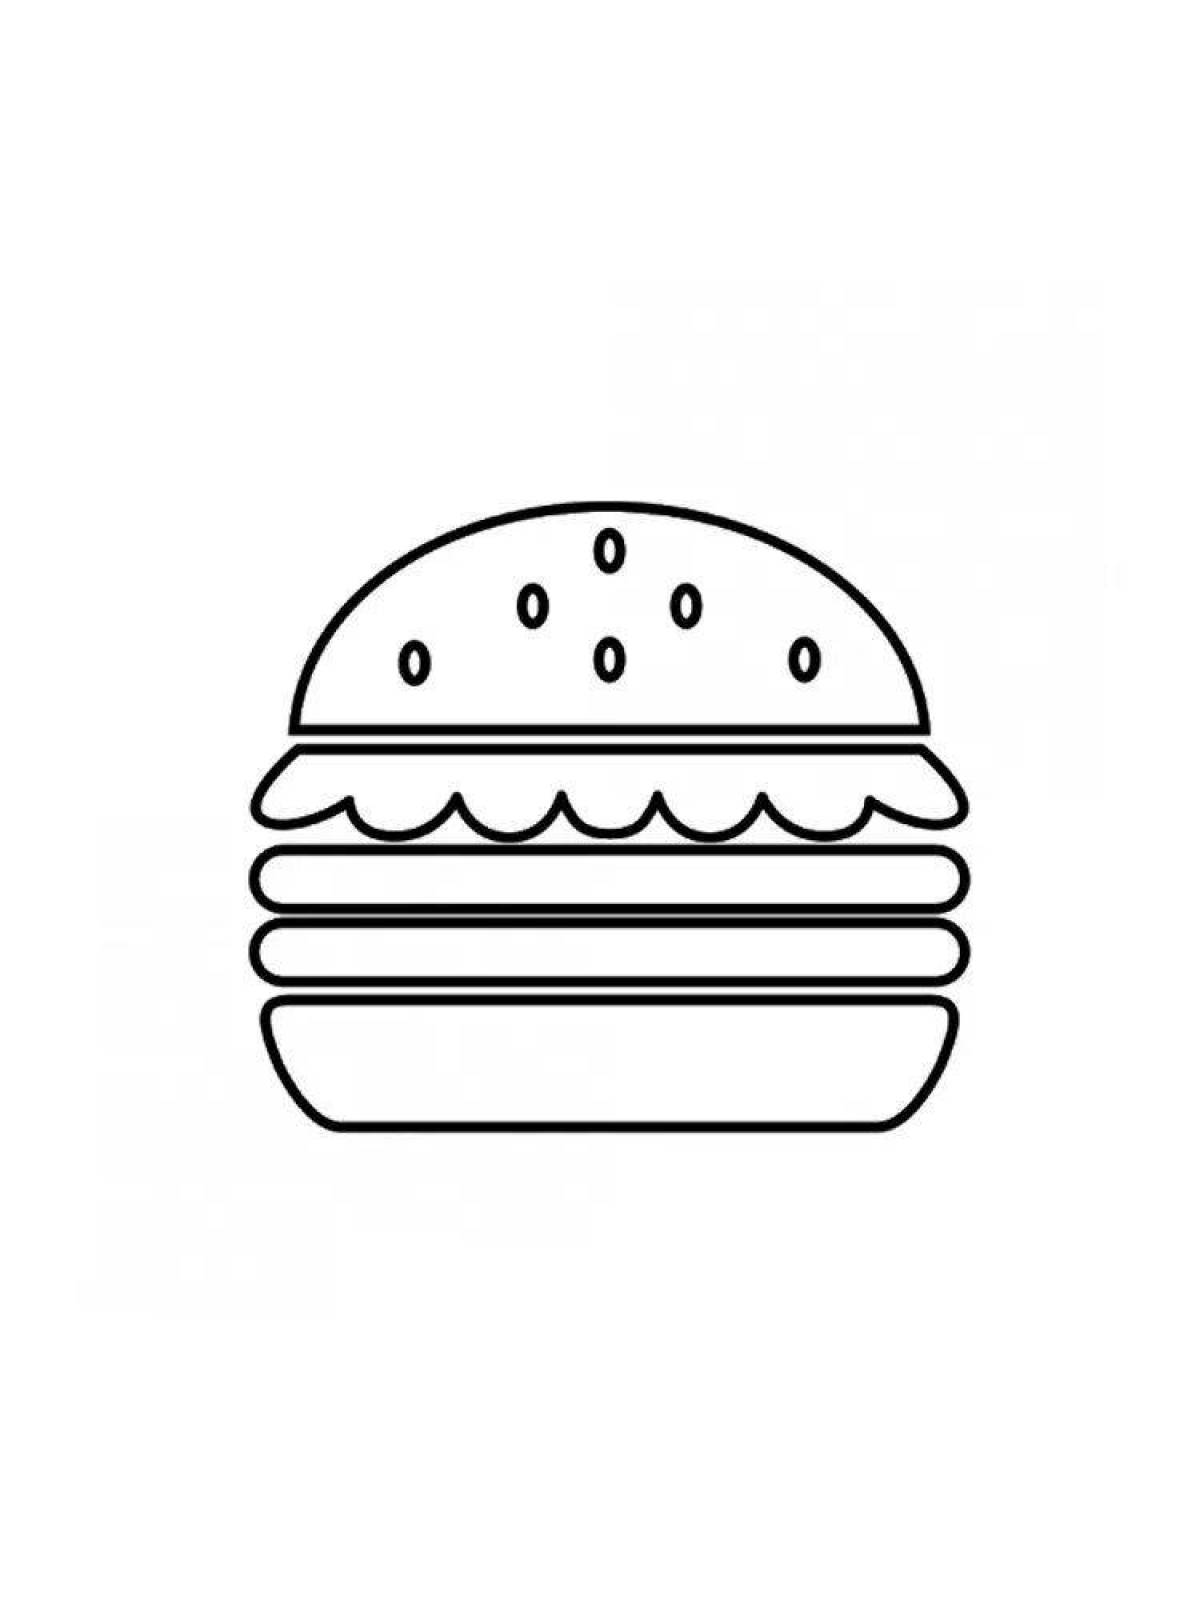 Юмористическая страница раскраски burger cat